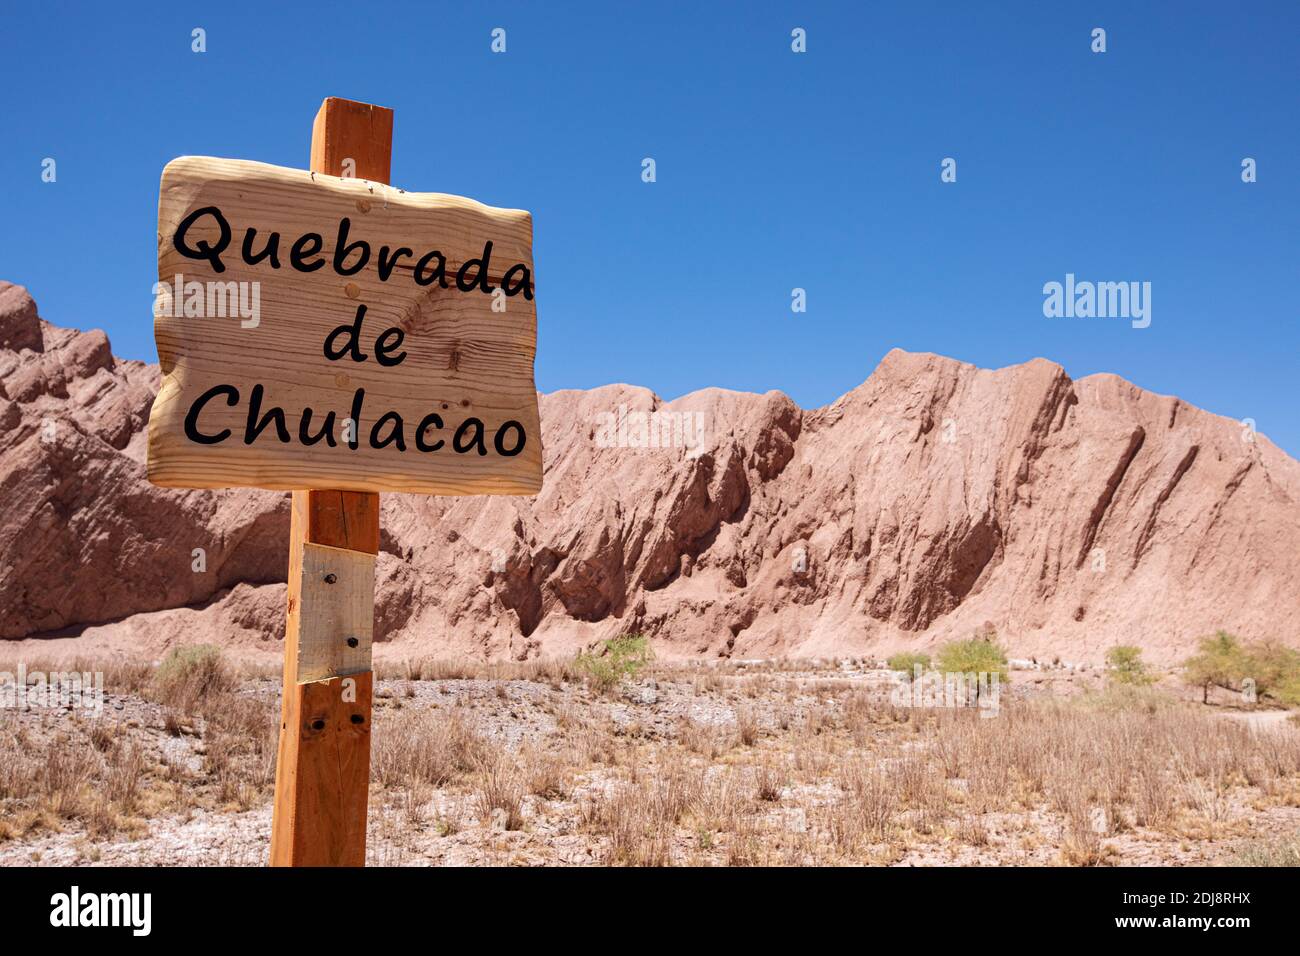 Le soleil brûlait les collines à Quebrada de Chulacao, la vallée de Catarpe dans le désert d'Atacama, au Chili. Banque D'Images